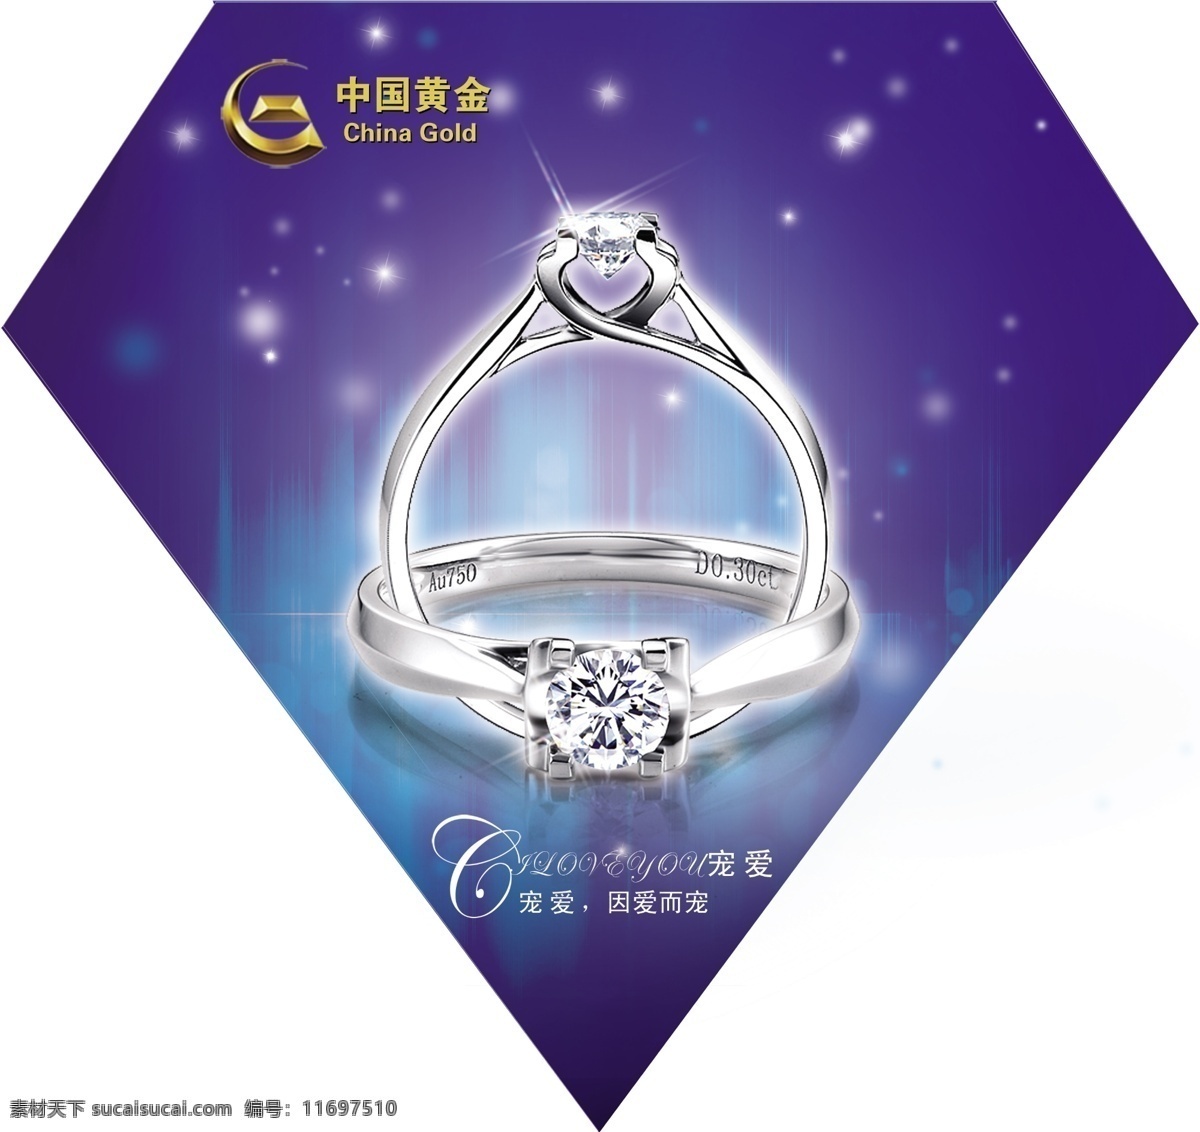 中国 黄金 钻石 活动 贴 中国黄金 钻石地贴 异型地贴 珠宝 钻石吊旗